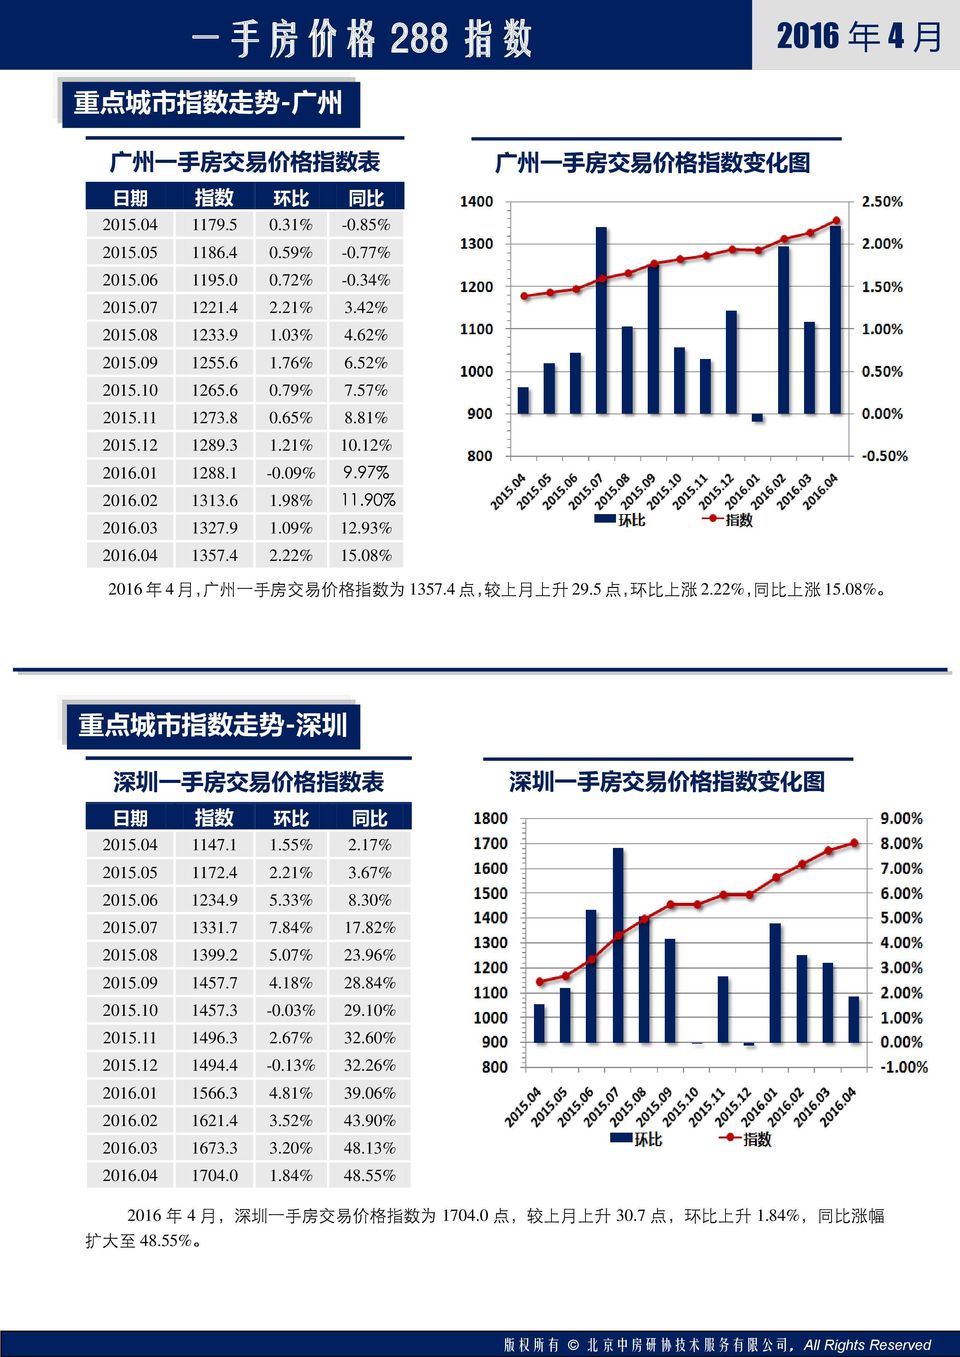 93% 2016.04 1357.4 2.22% 15.08%, 广 州 一 手 房 交 易 价 格 指 数 为 1357.4 点, 较 上 月 上 升 29.5 点, 环 比 上 涨 2.22%, 同 比 上 涨 15.08% 重 点 城 市 指 数 走 势 - 深 圳 深 圳 一 手 房 交 易 价 格 指 数 表 深 圳 一 手 房 交 易 价 格 指 数 变 化 图 2015.